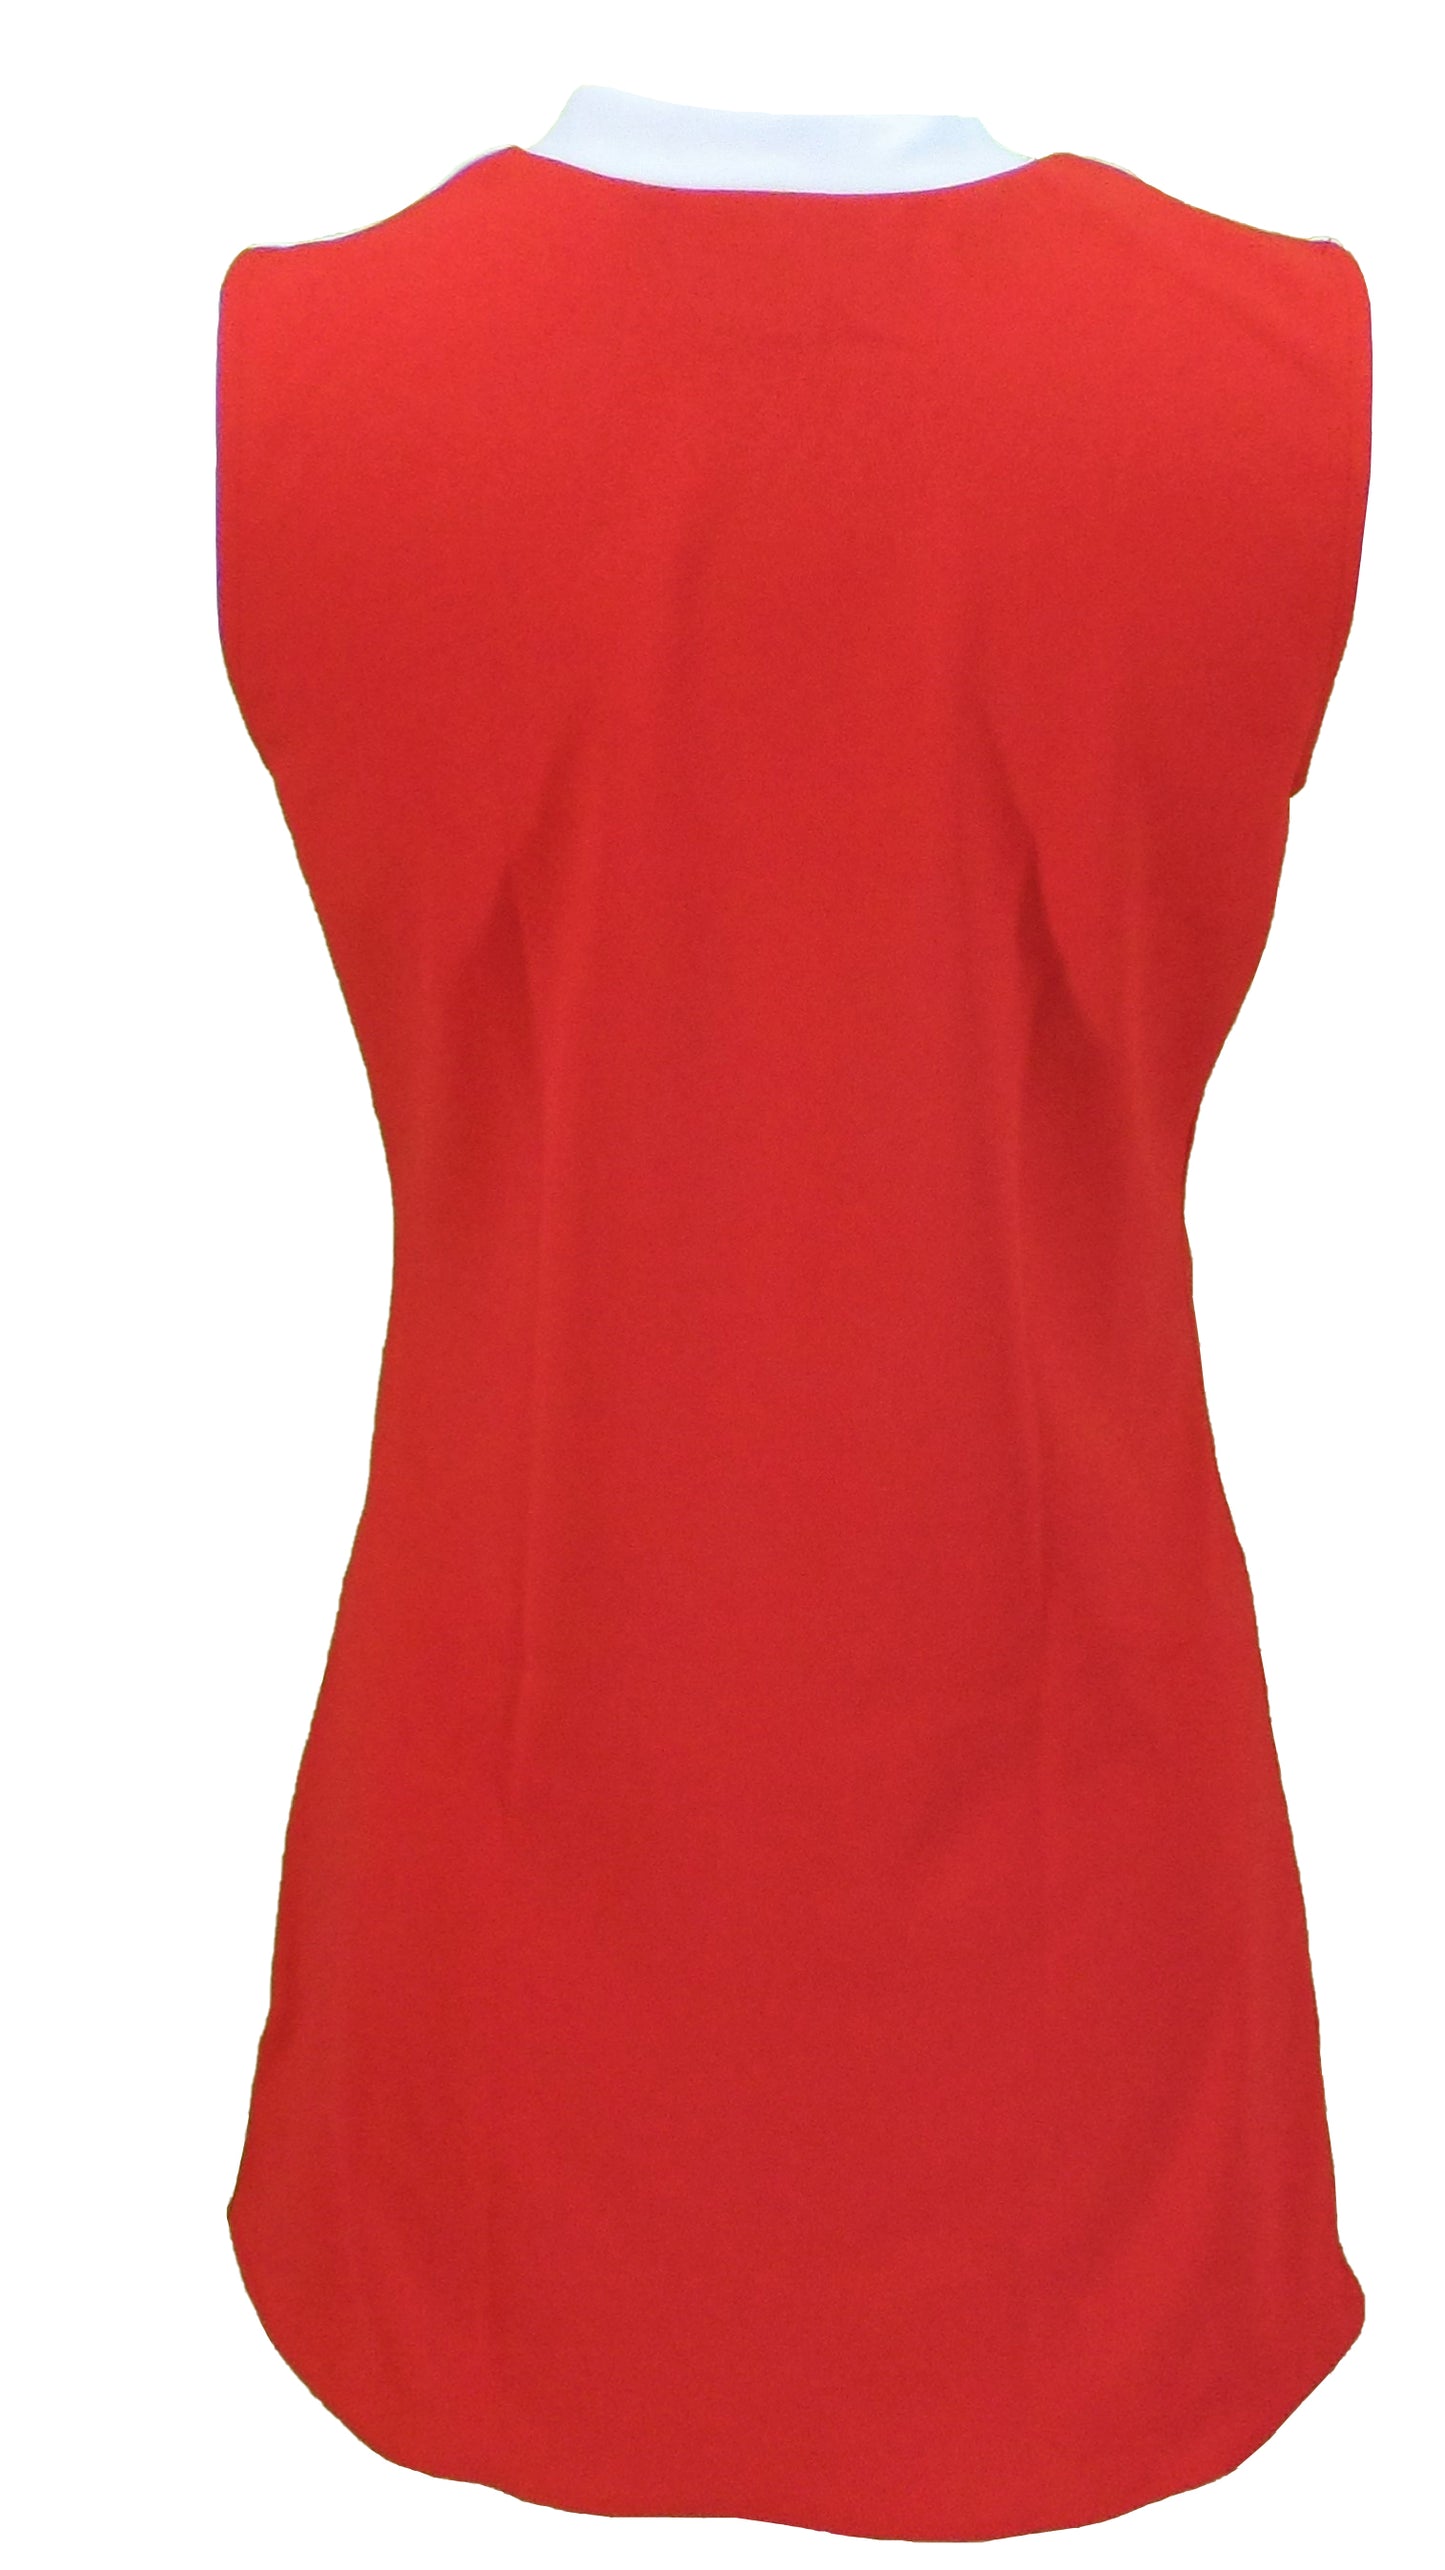 Mod Dress con botón de destino rojo y blanco retro para mujer